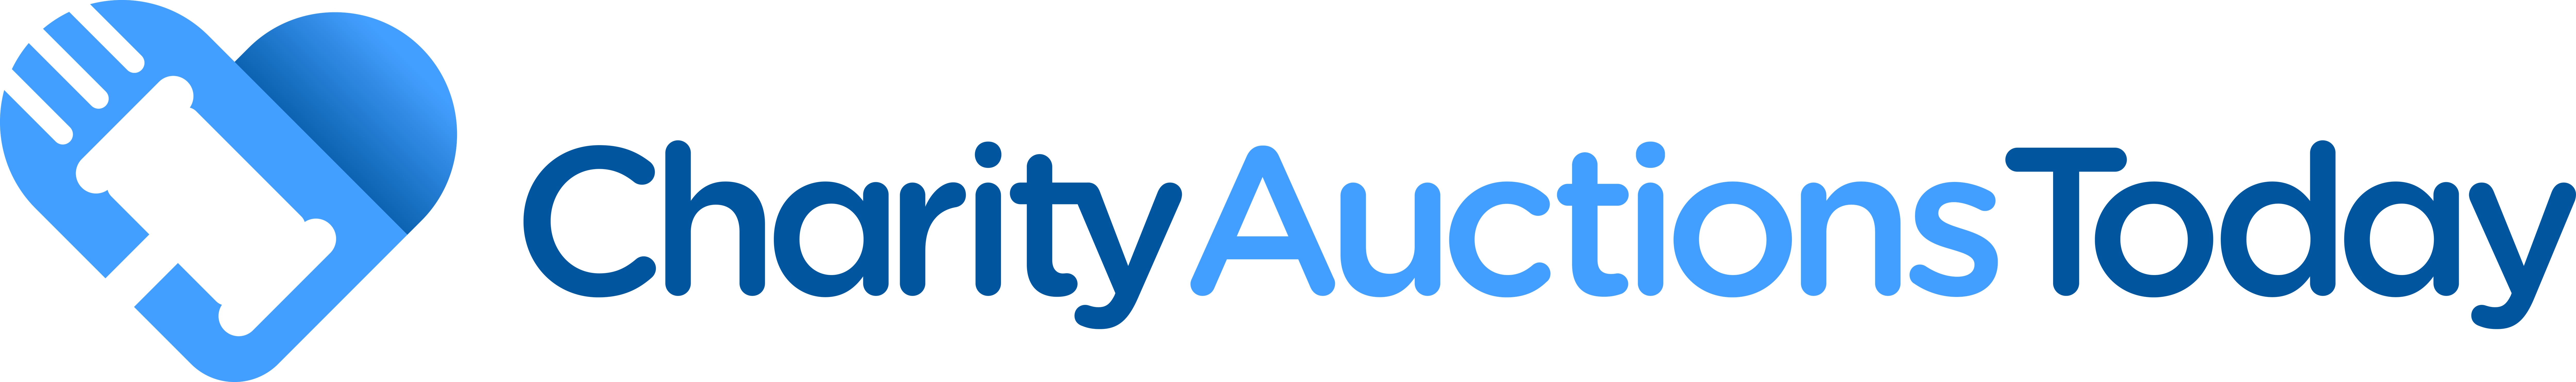 CharityAuctionsToday logo